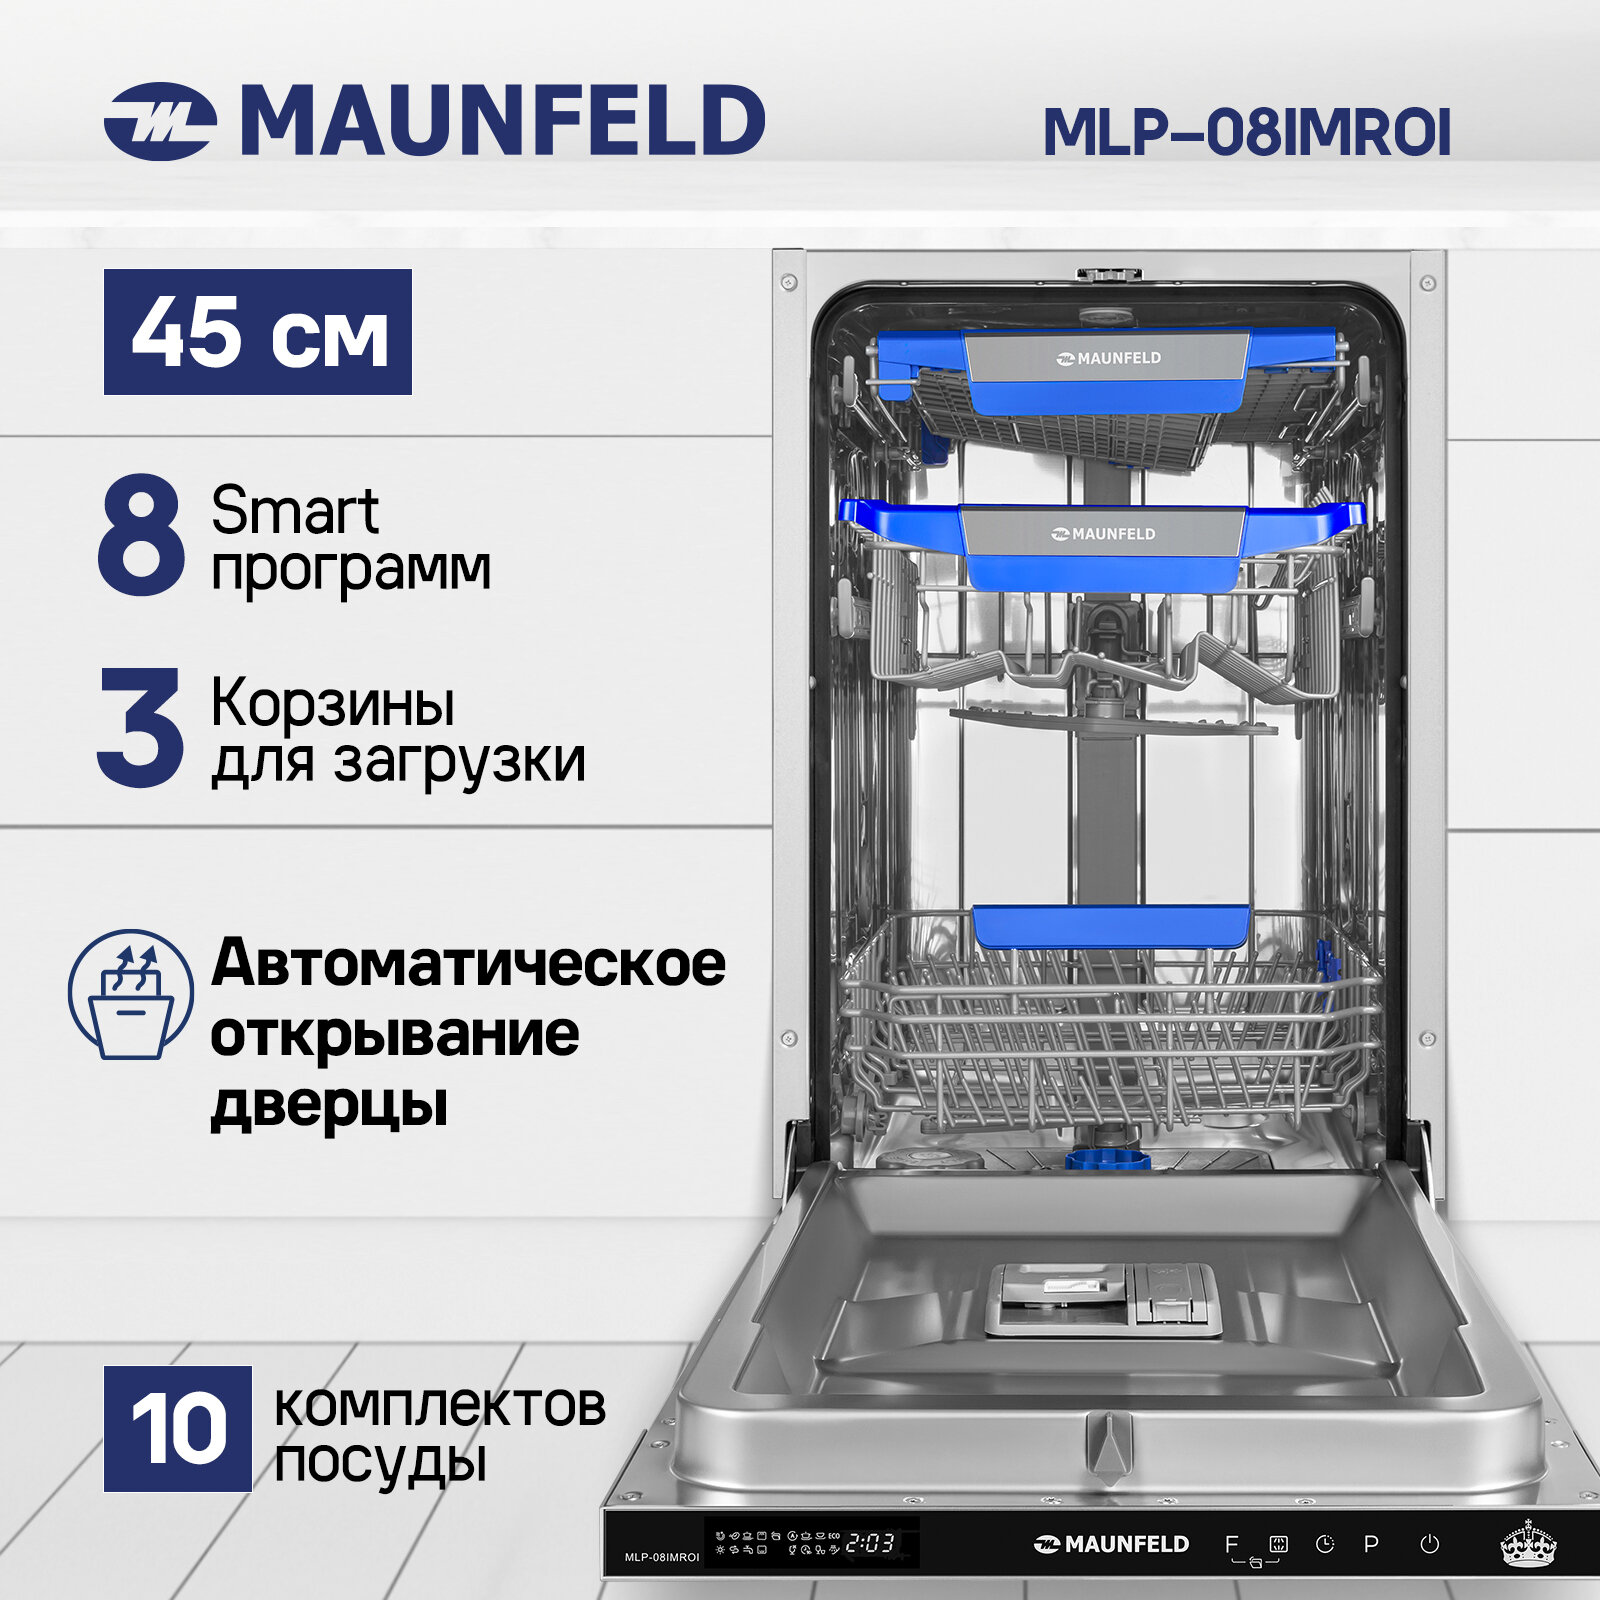 Посудомоечная машина с авто-открыванием MAUNFELD MLP-08IMRO